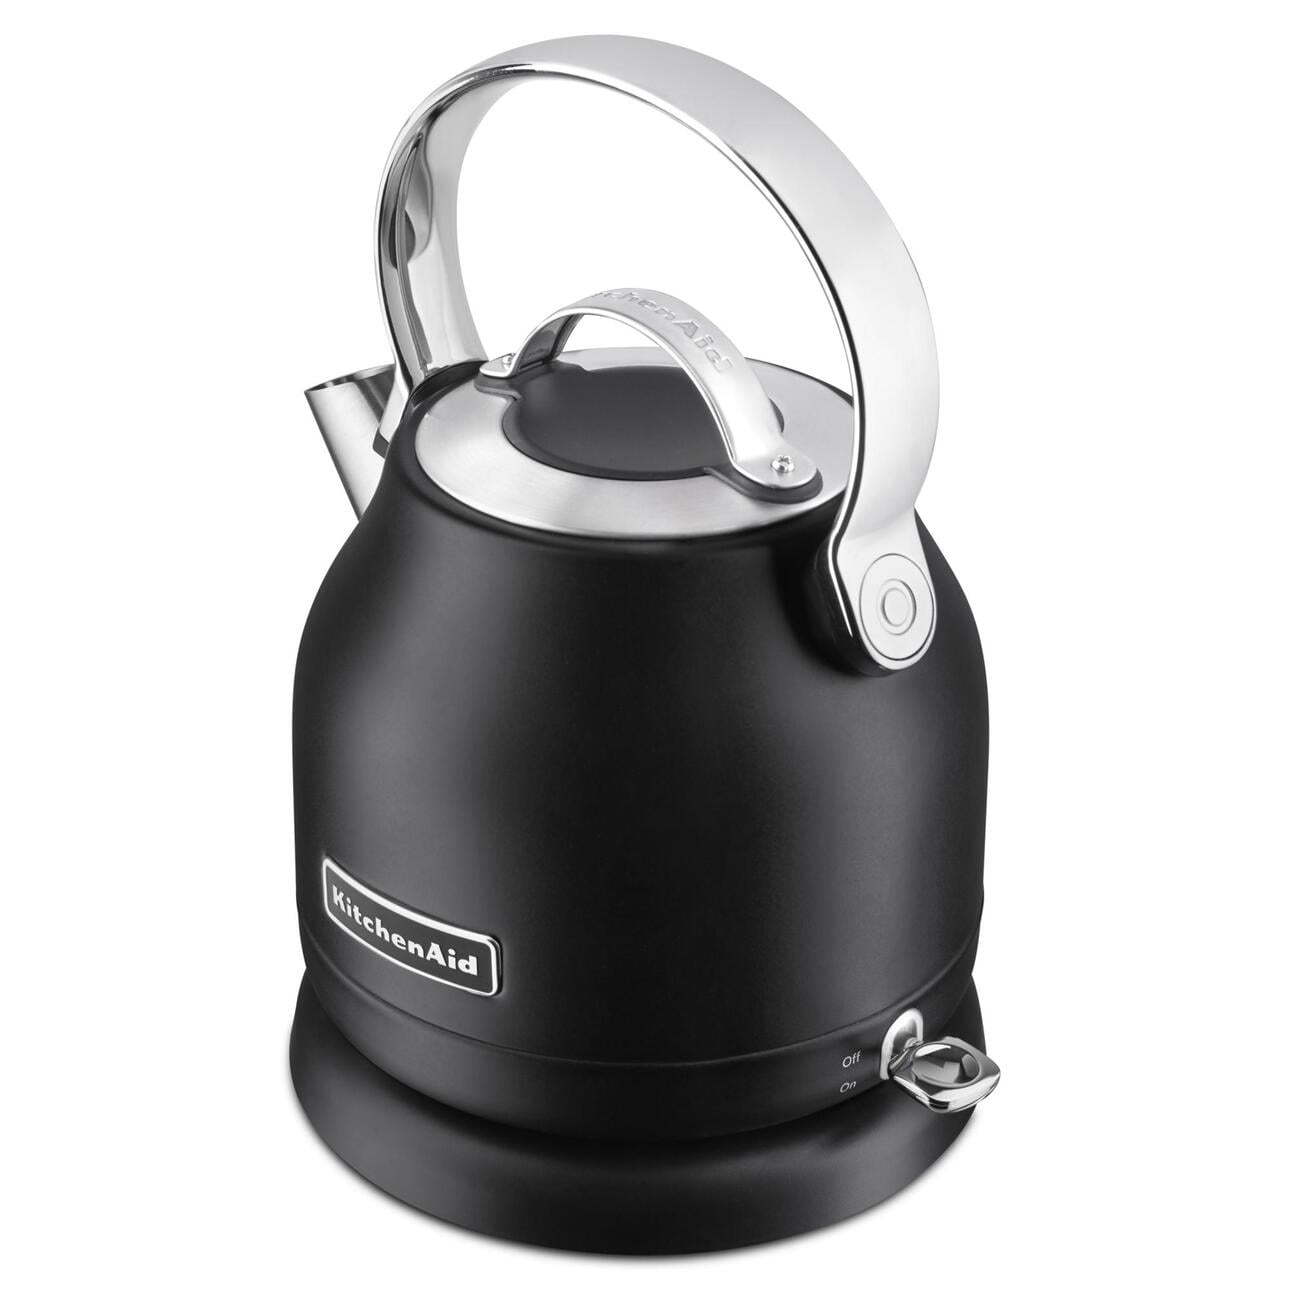 Electric kettle ARTISAN 1,5 l, black, KitchenAid 